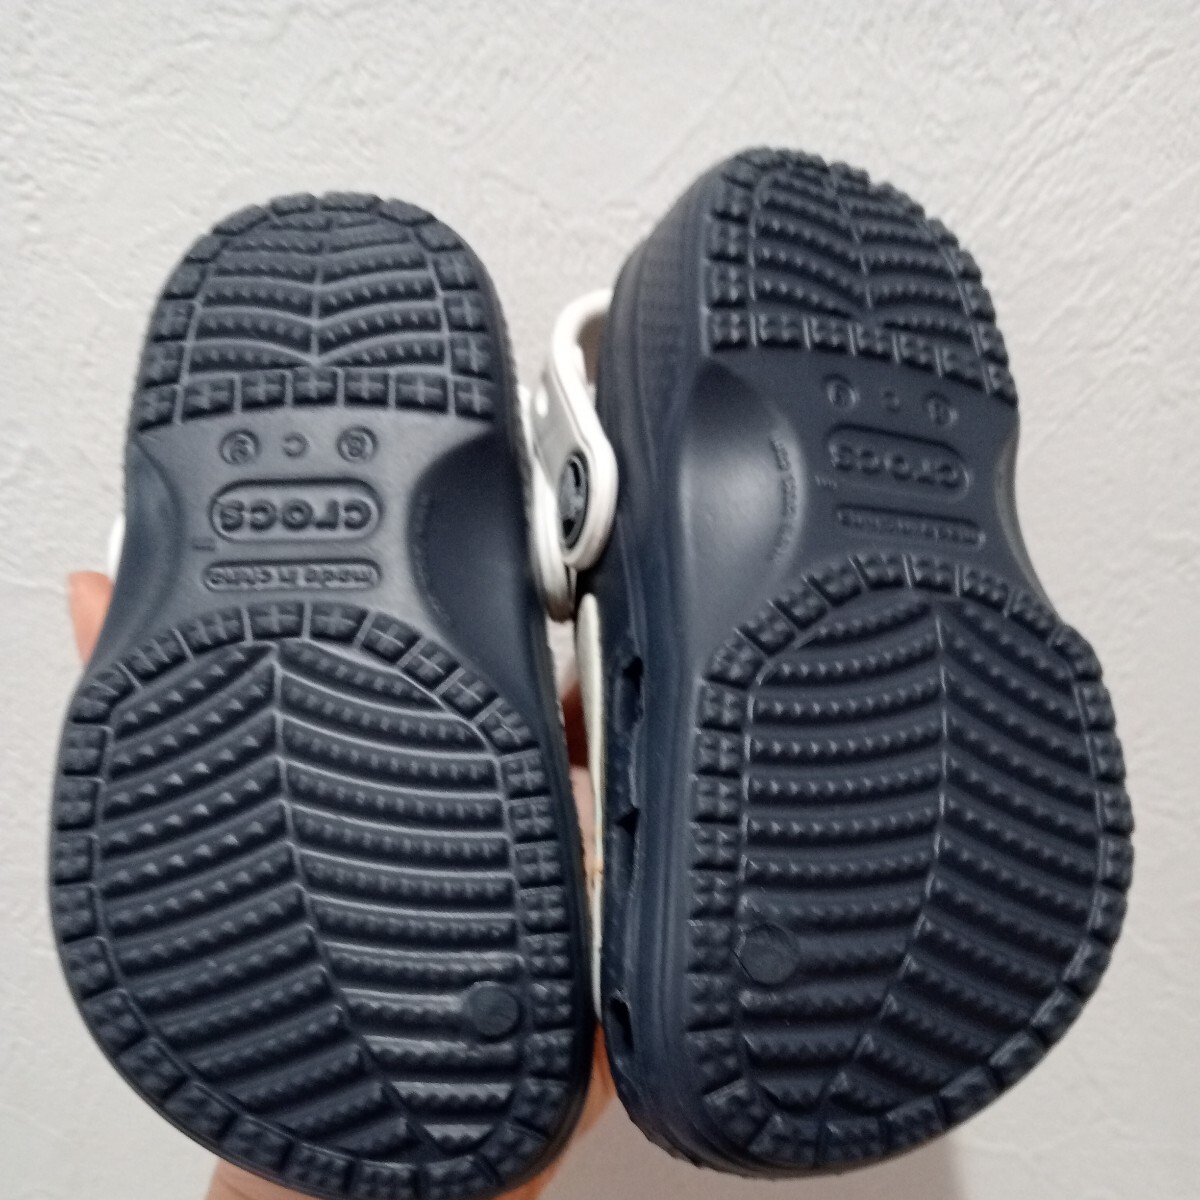  новый товар? не использовался Crocs Disney crocs обувь 15.5 ребенок сандалии 8C9 15 15.5cm сандалии есть перевод 